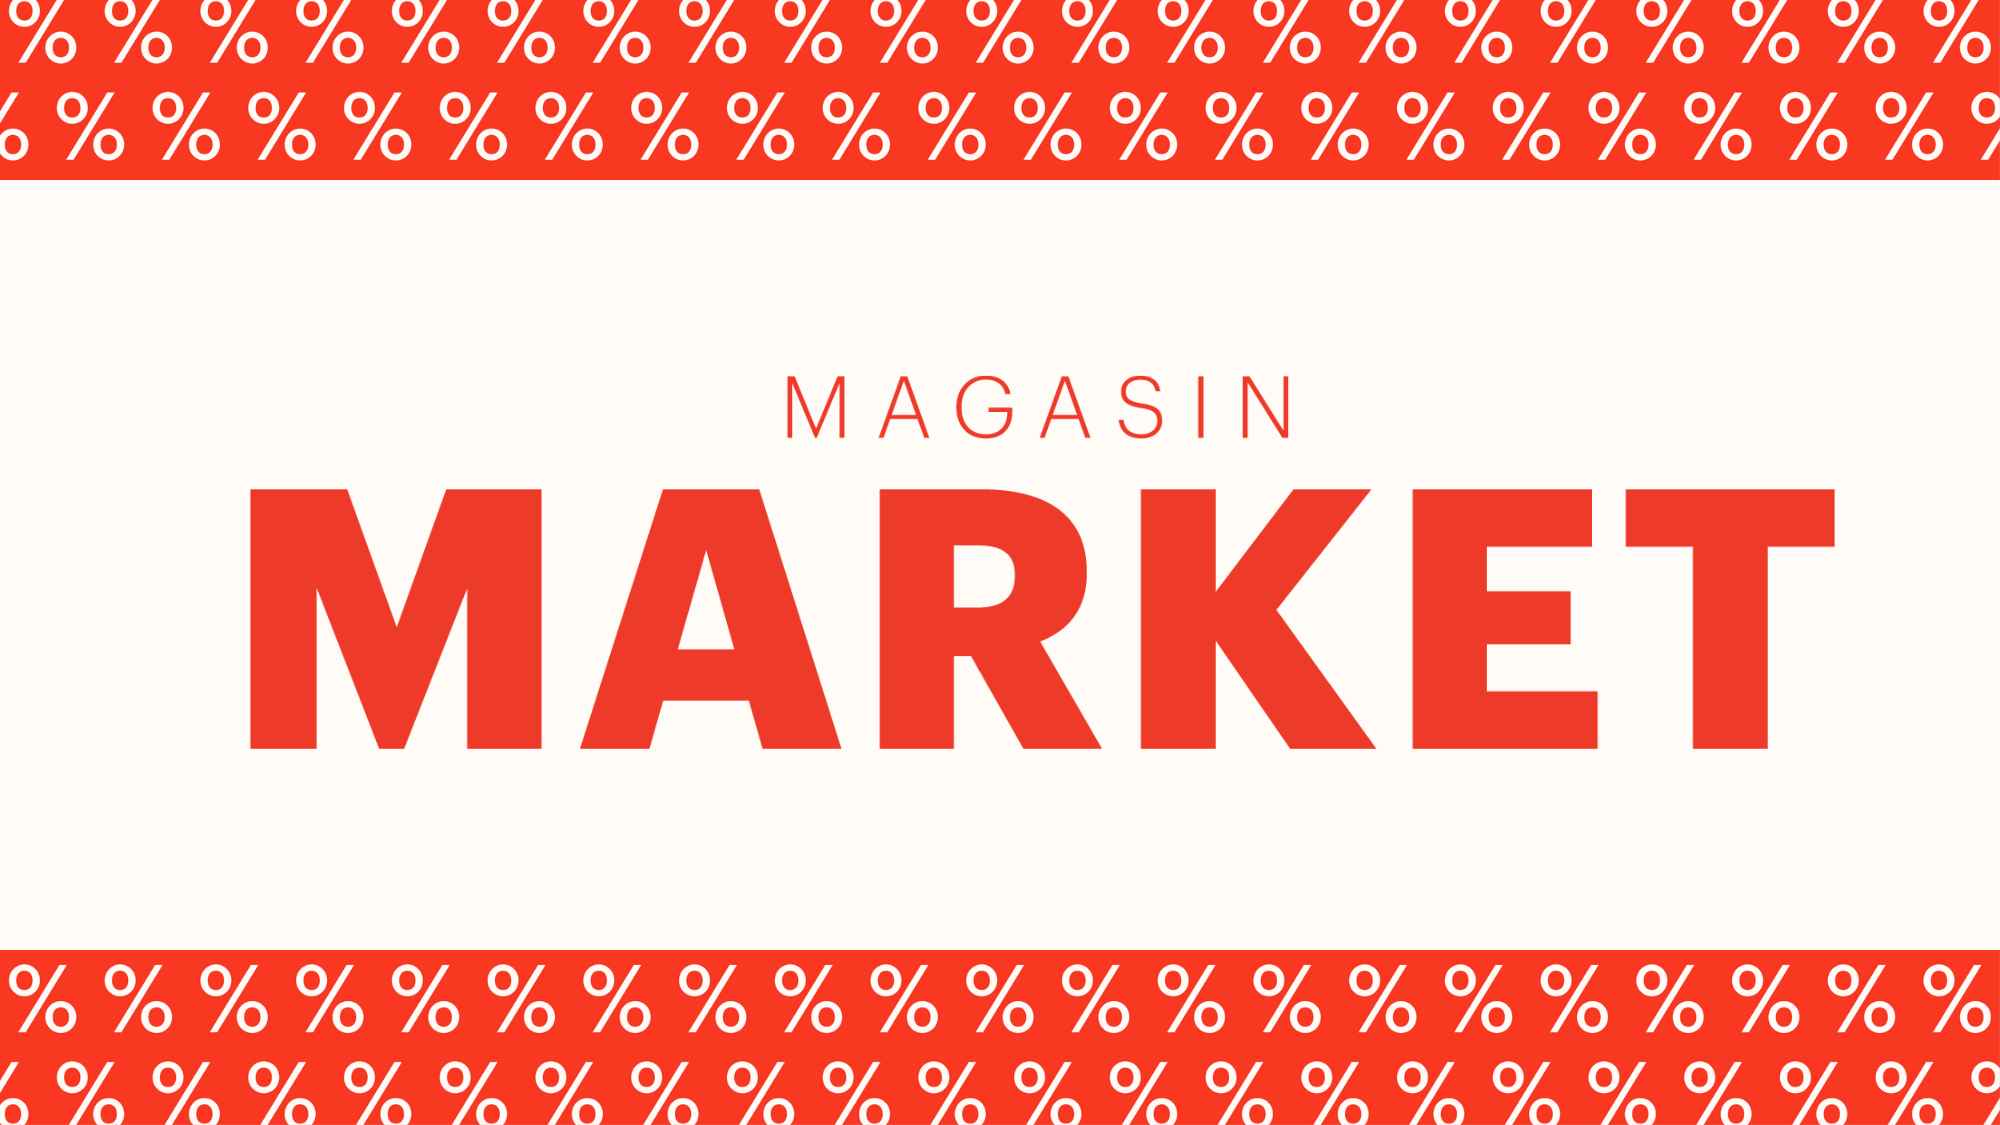 Magasin | Køb Mode, Bolig, og Gaver +1000